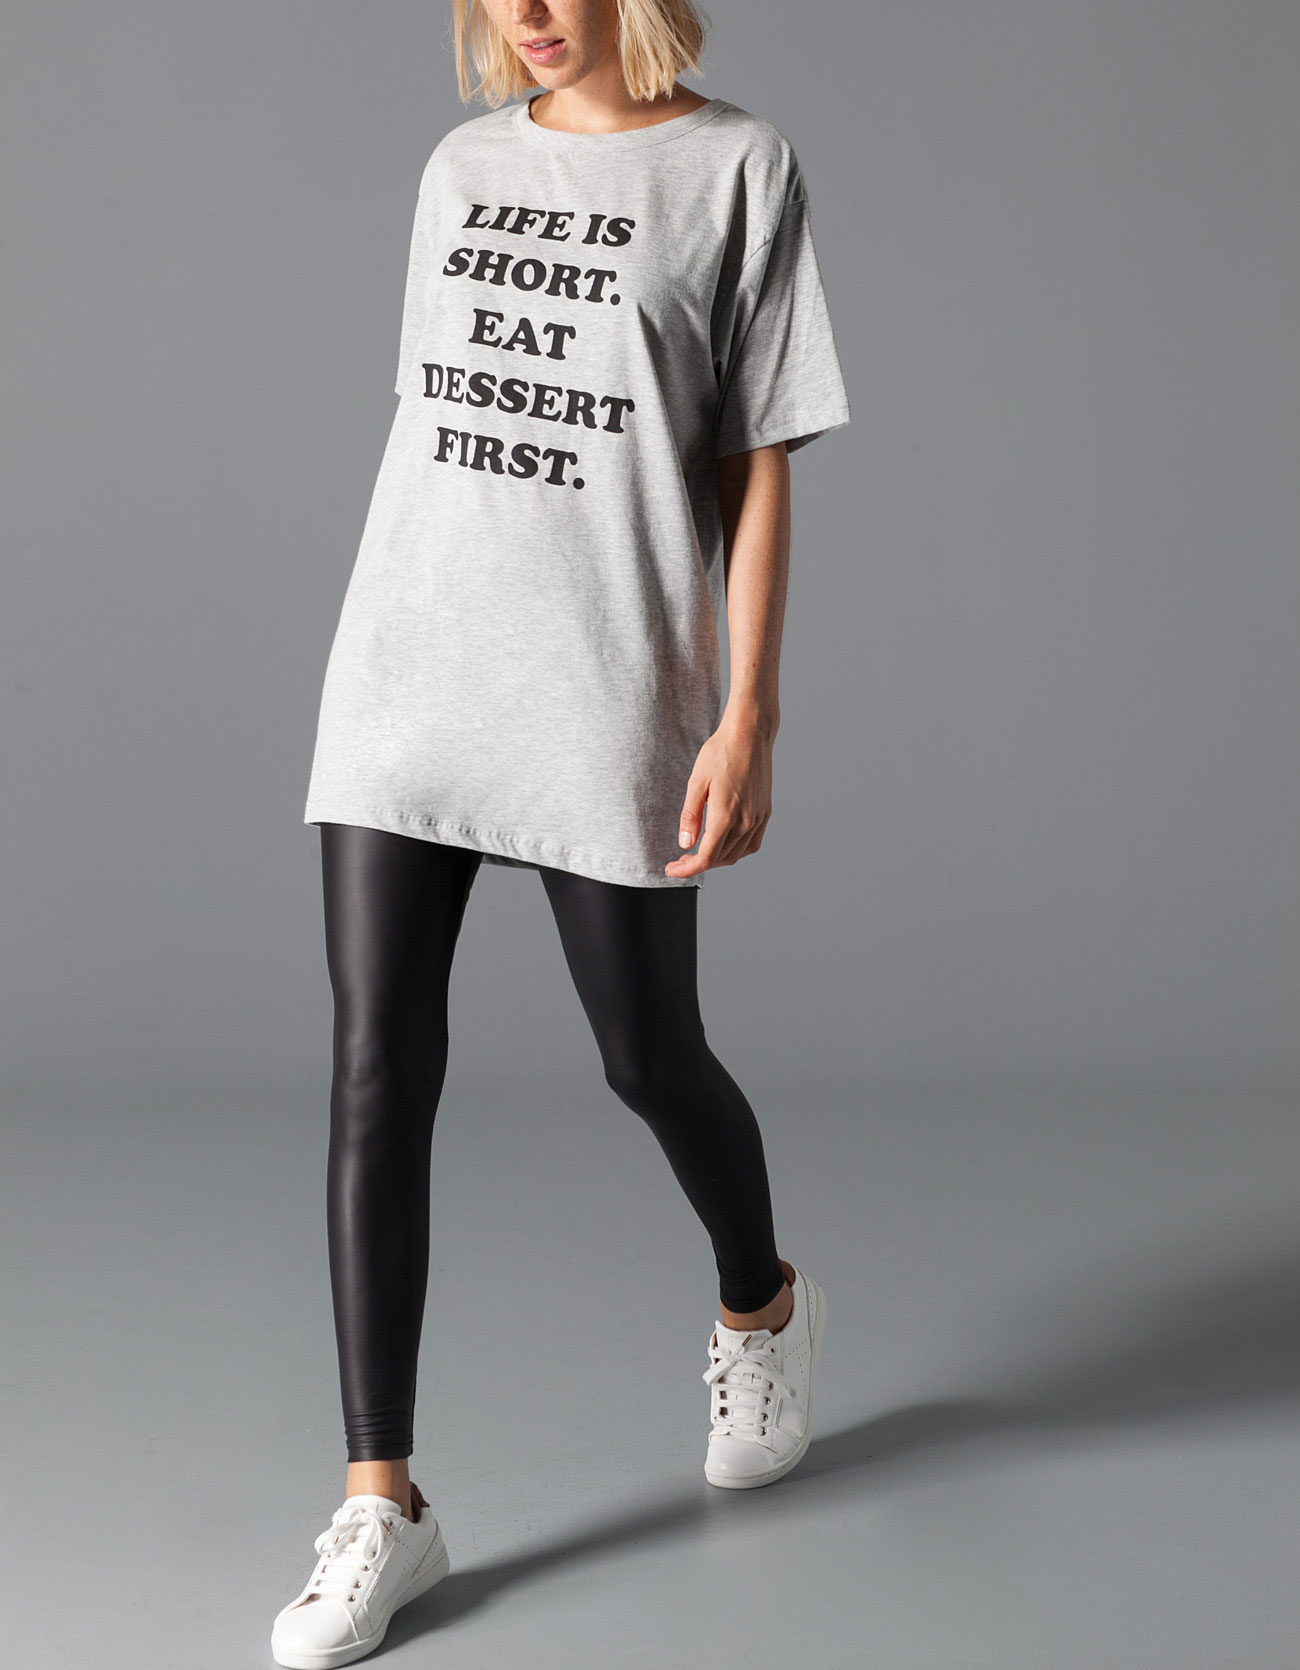 stradivarius camisetas con mensaje colección otoño invierno 2014/15